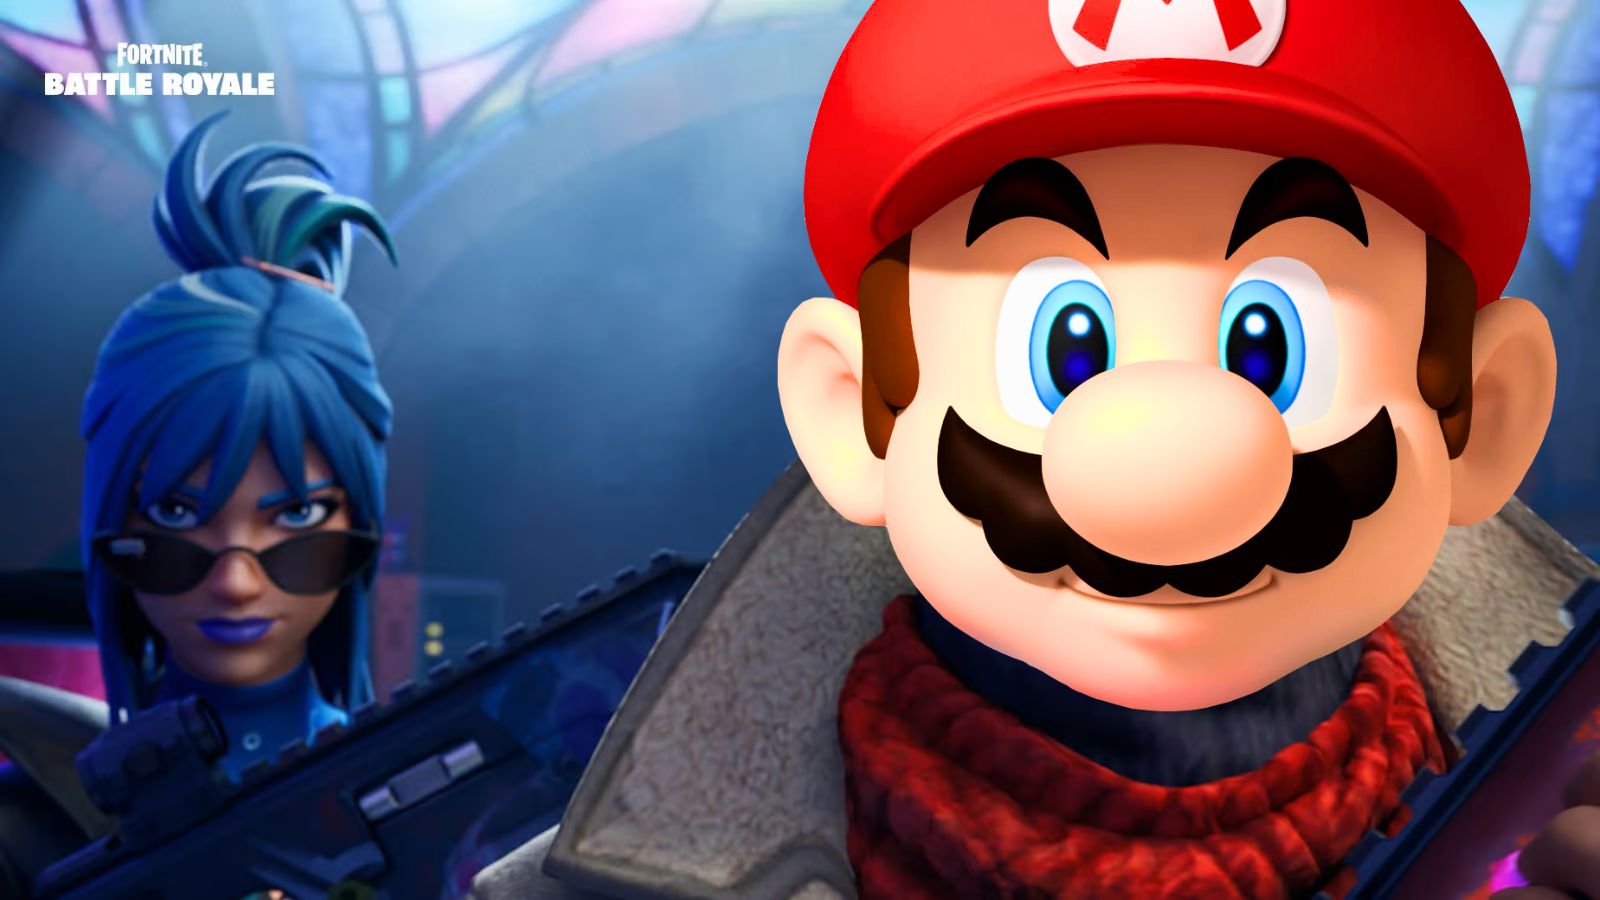 Le PDG d’Epic Games affirme avoir tenté d’ajouter des personnages Nintendo à Fortnite